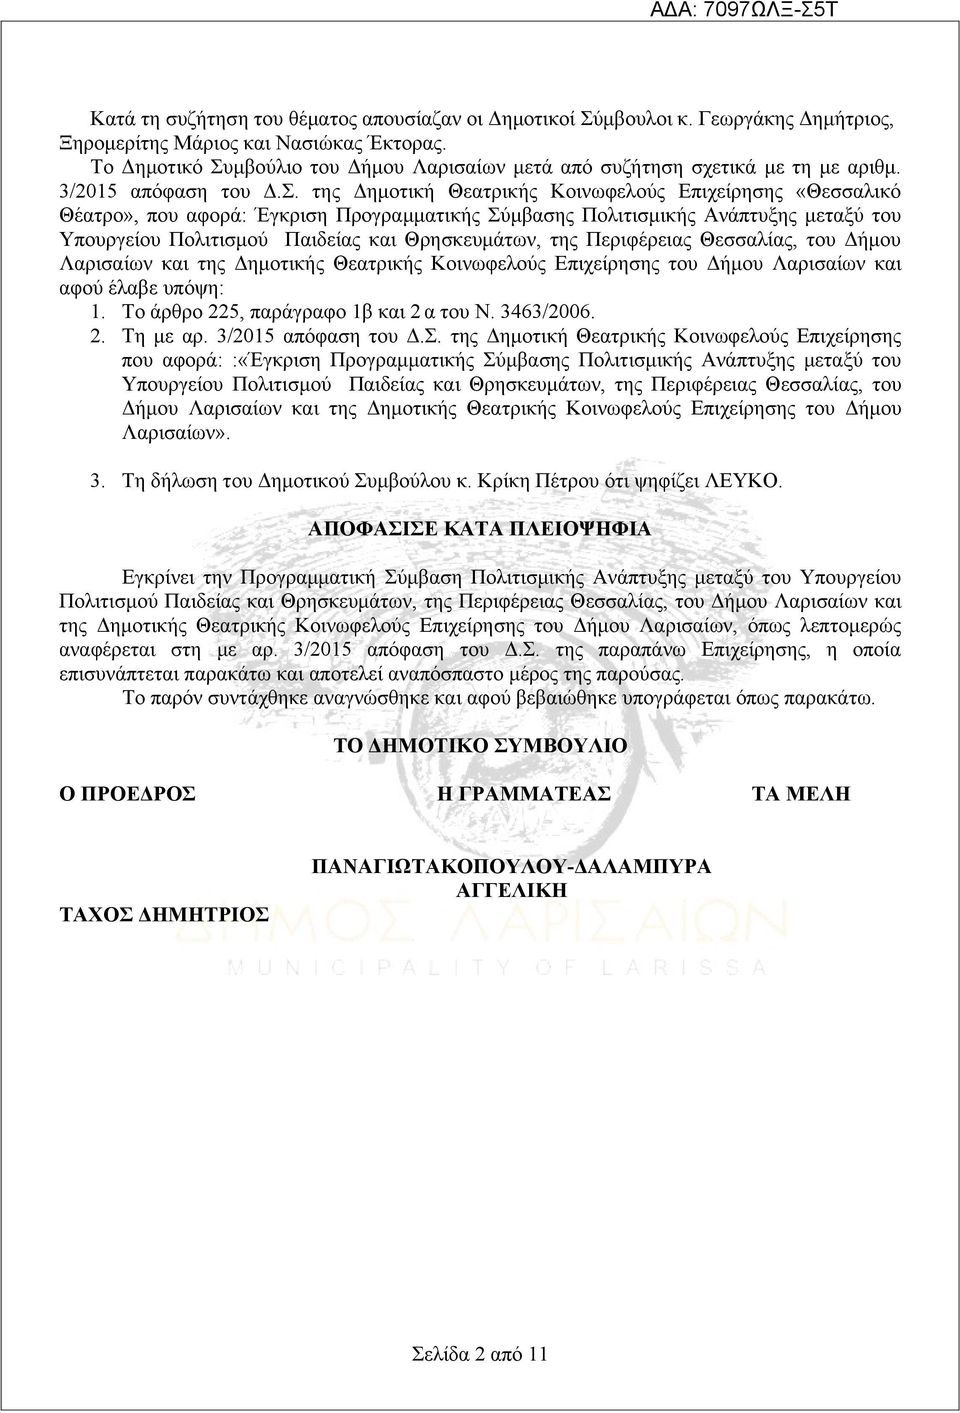 μβούλιο του Δήμου Λαρισαίων μετά από συζήτηση σχετικά με τη με αριθμ. 3/2015 απόφαση του Δ.Σ.